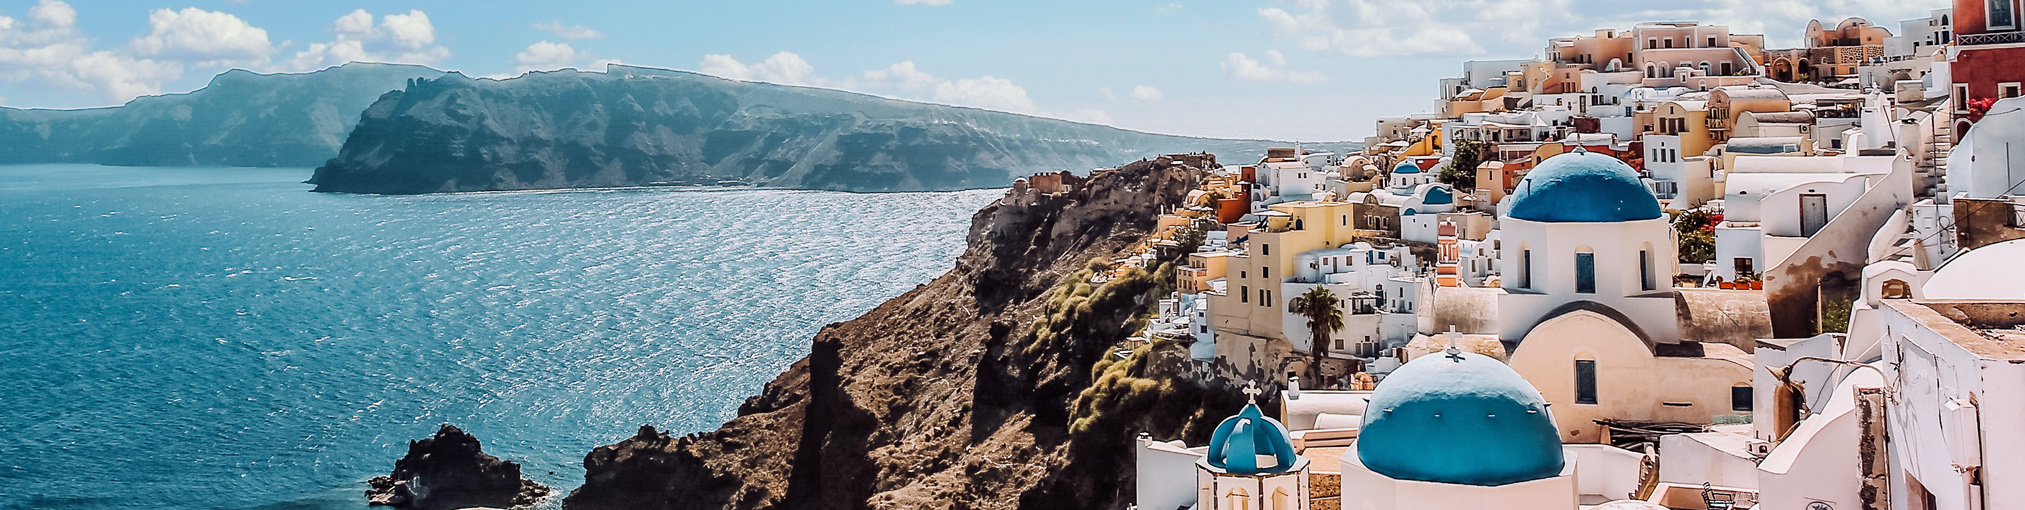 Görög utazás, tengerparti kisváros látképe, kék háztetők, tenger, sziget